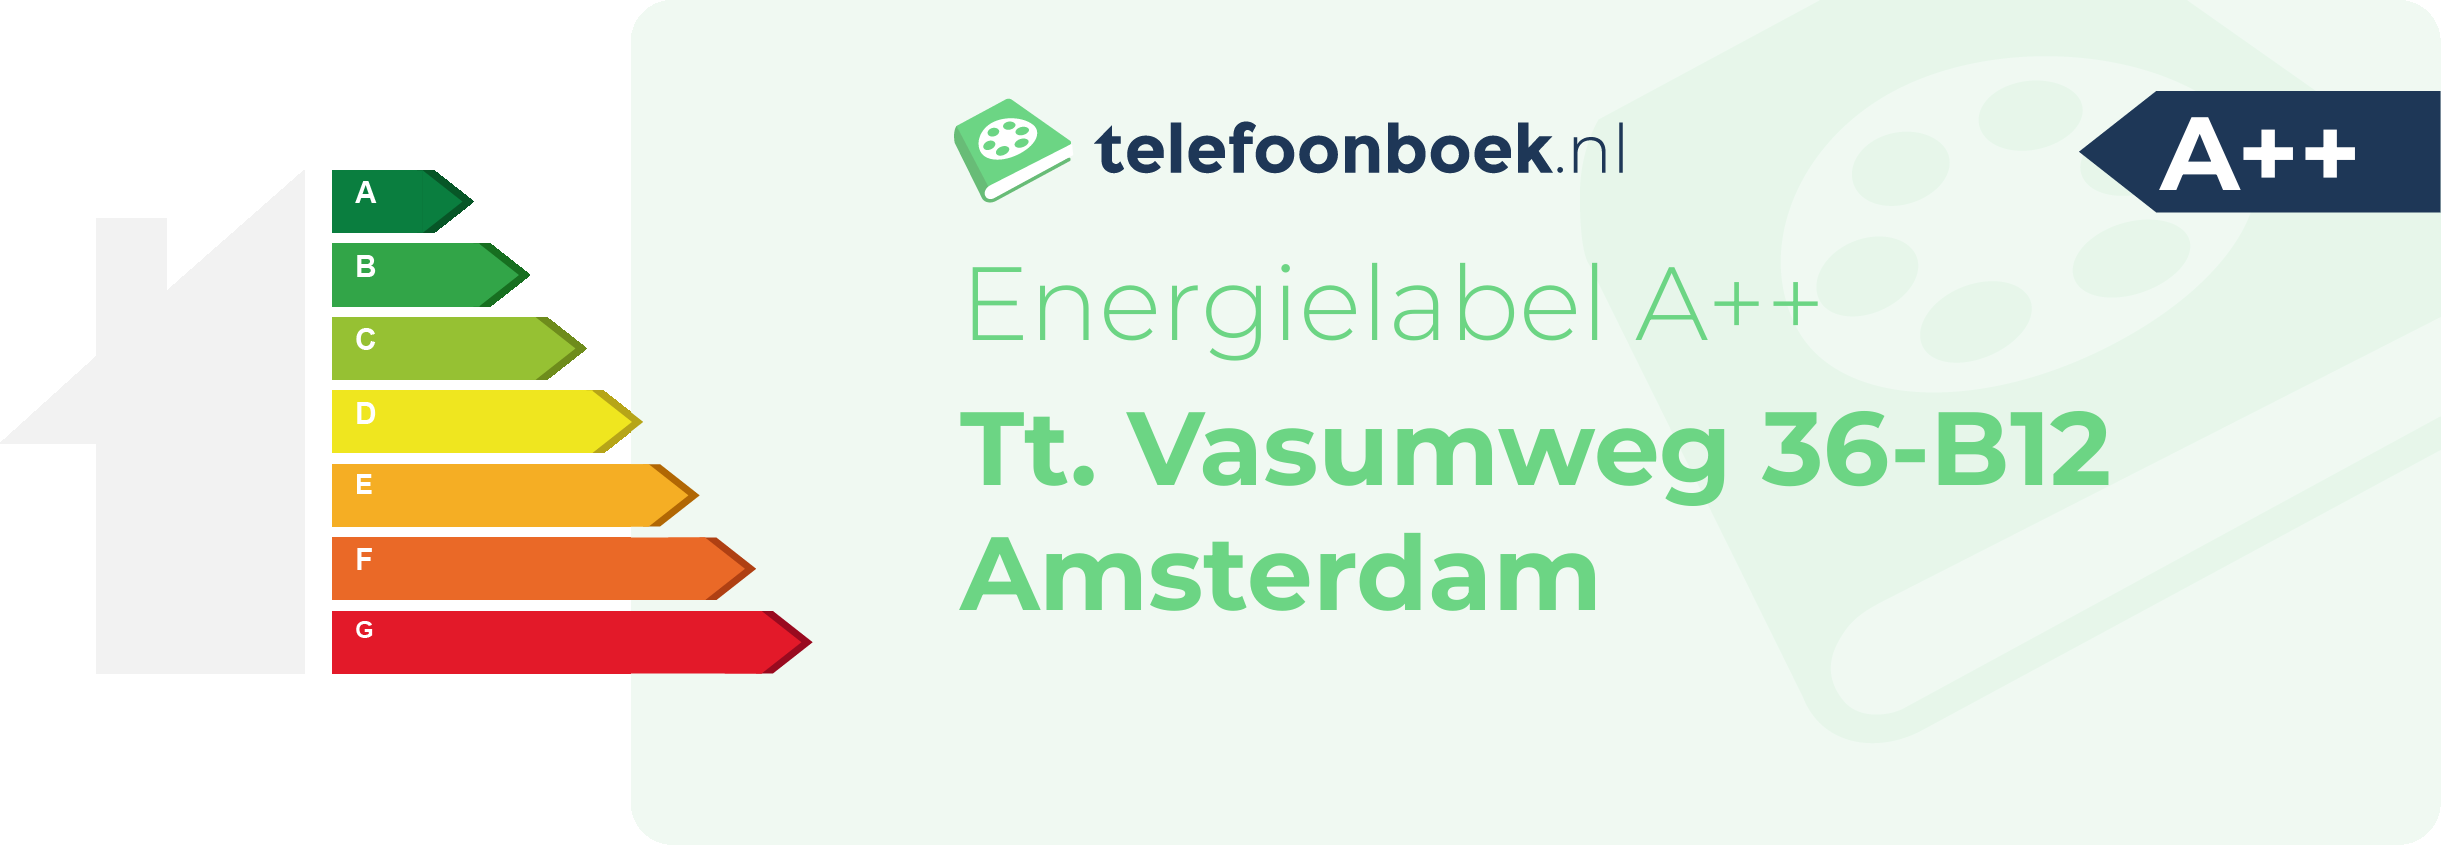 Energielabel Tt. Vasumweg 36-B12 Amsterdam